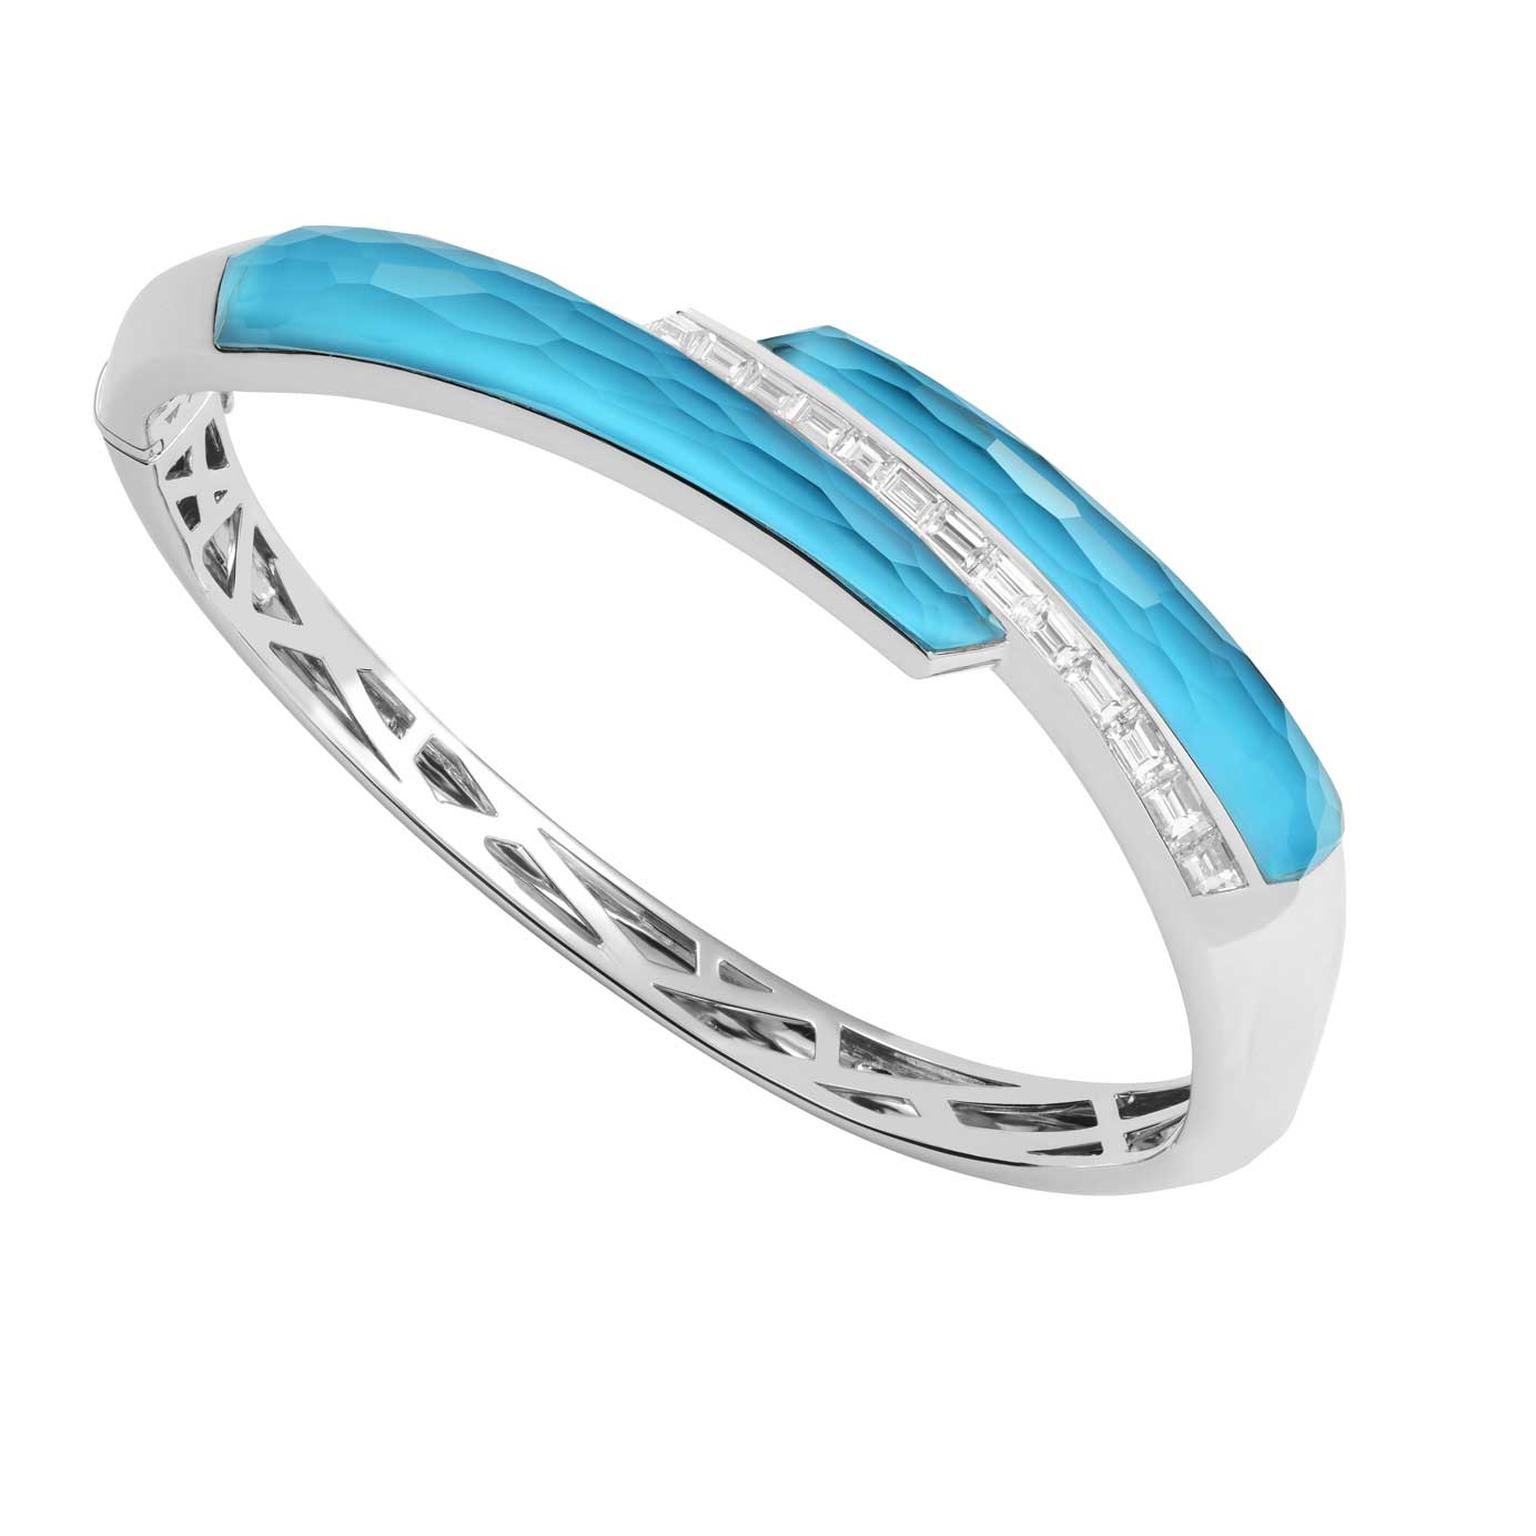 Stephen Webster CH2 Shard turquoise bracelet